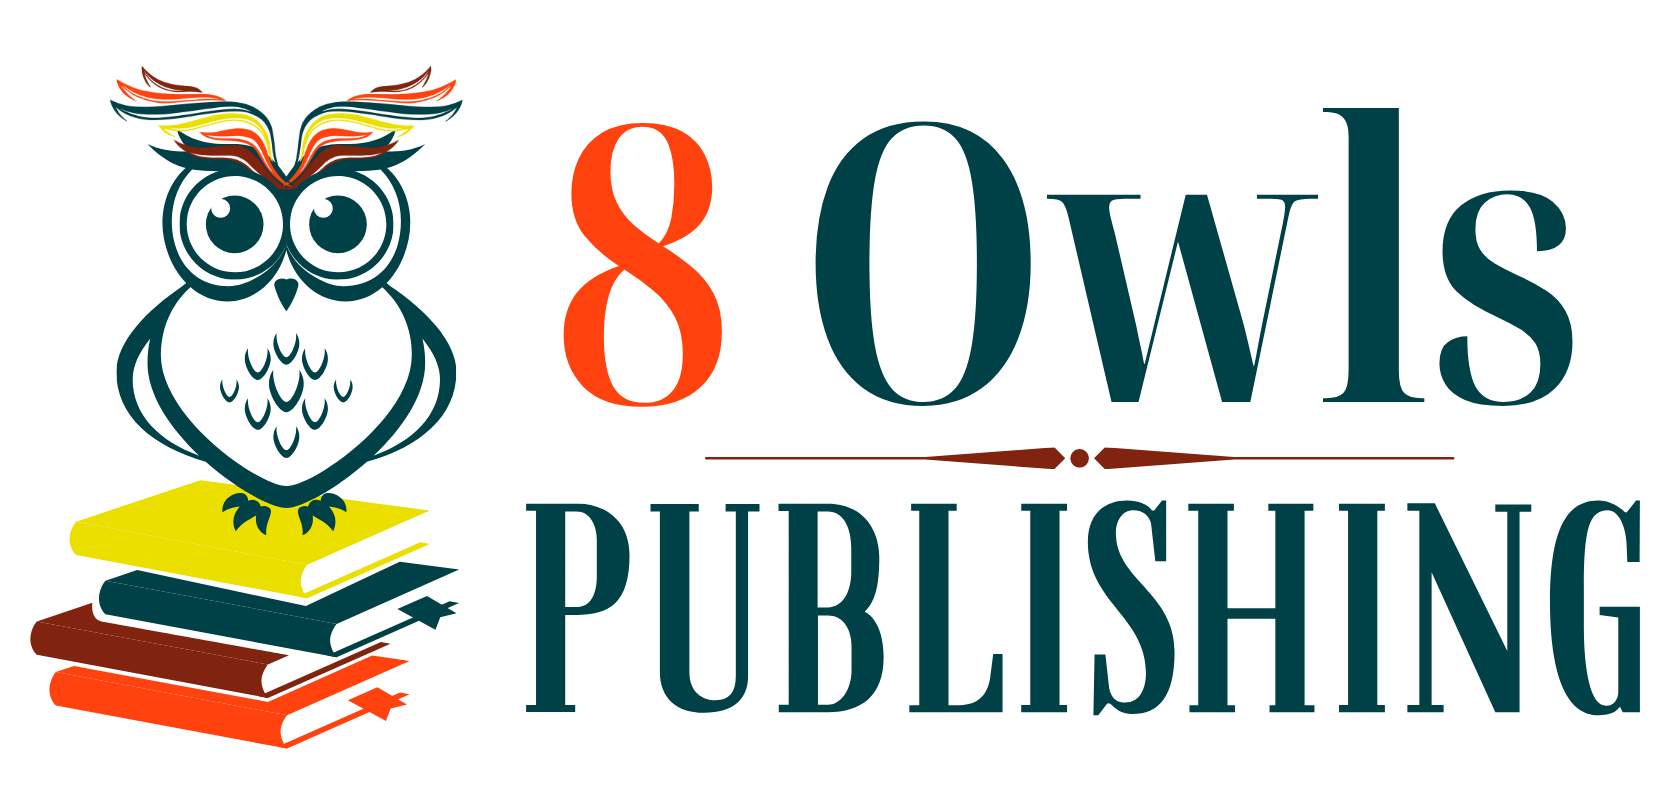 8 Owls Publishing